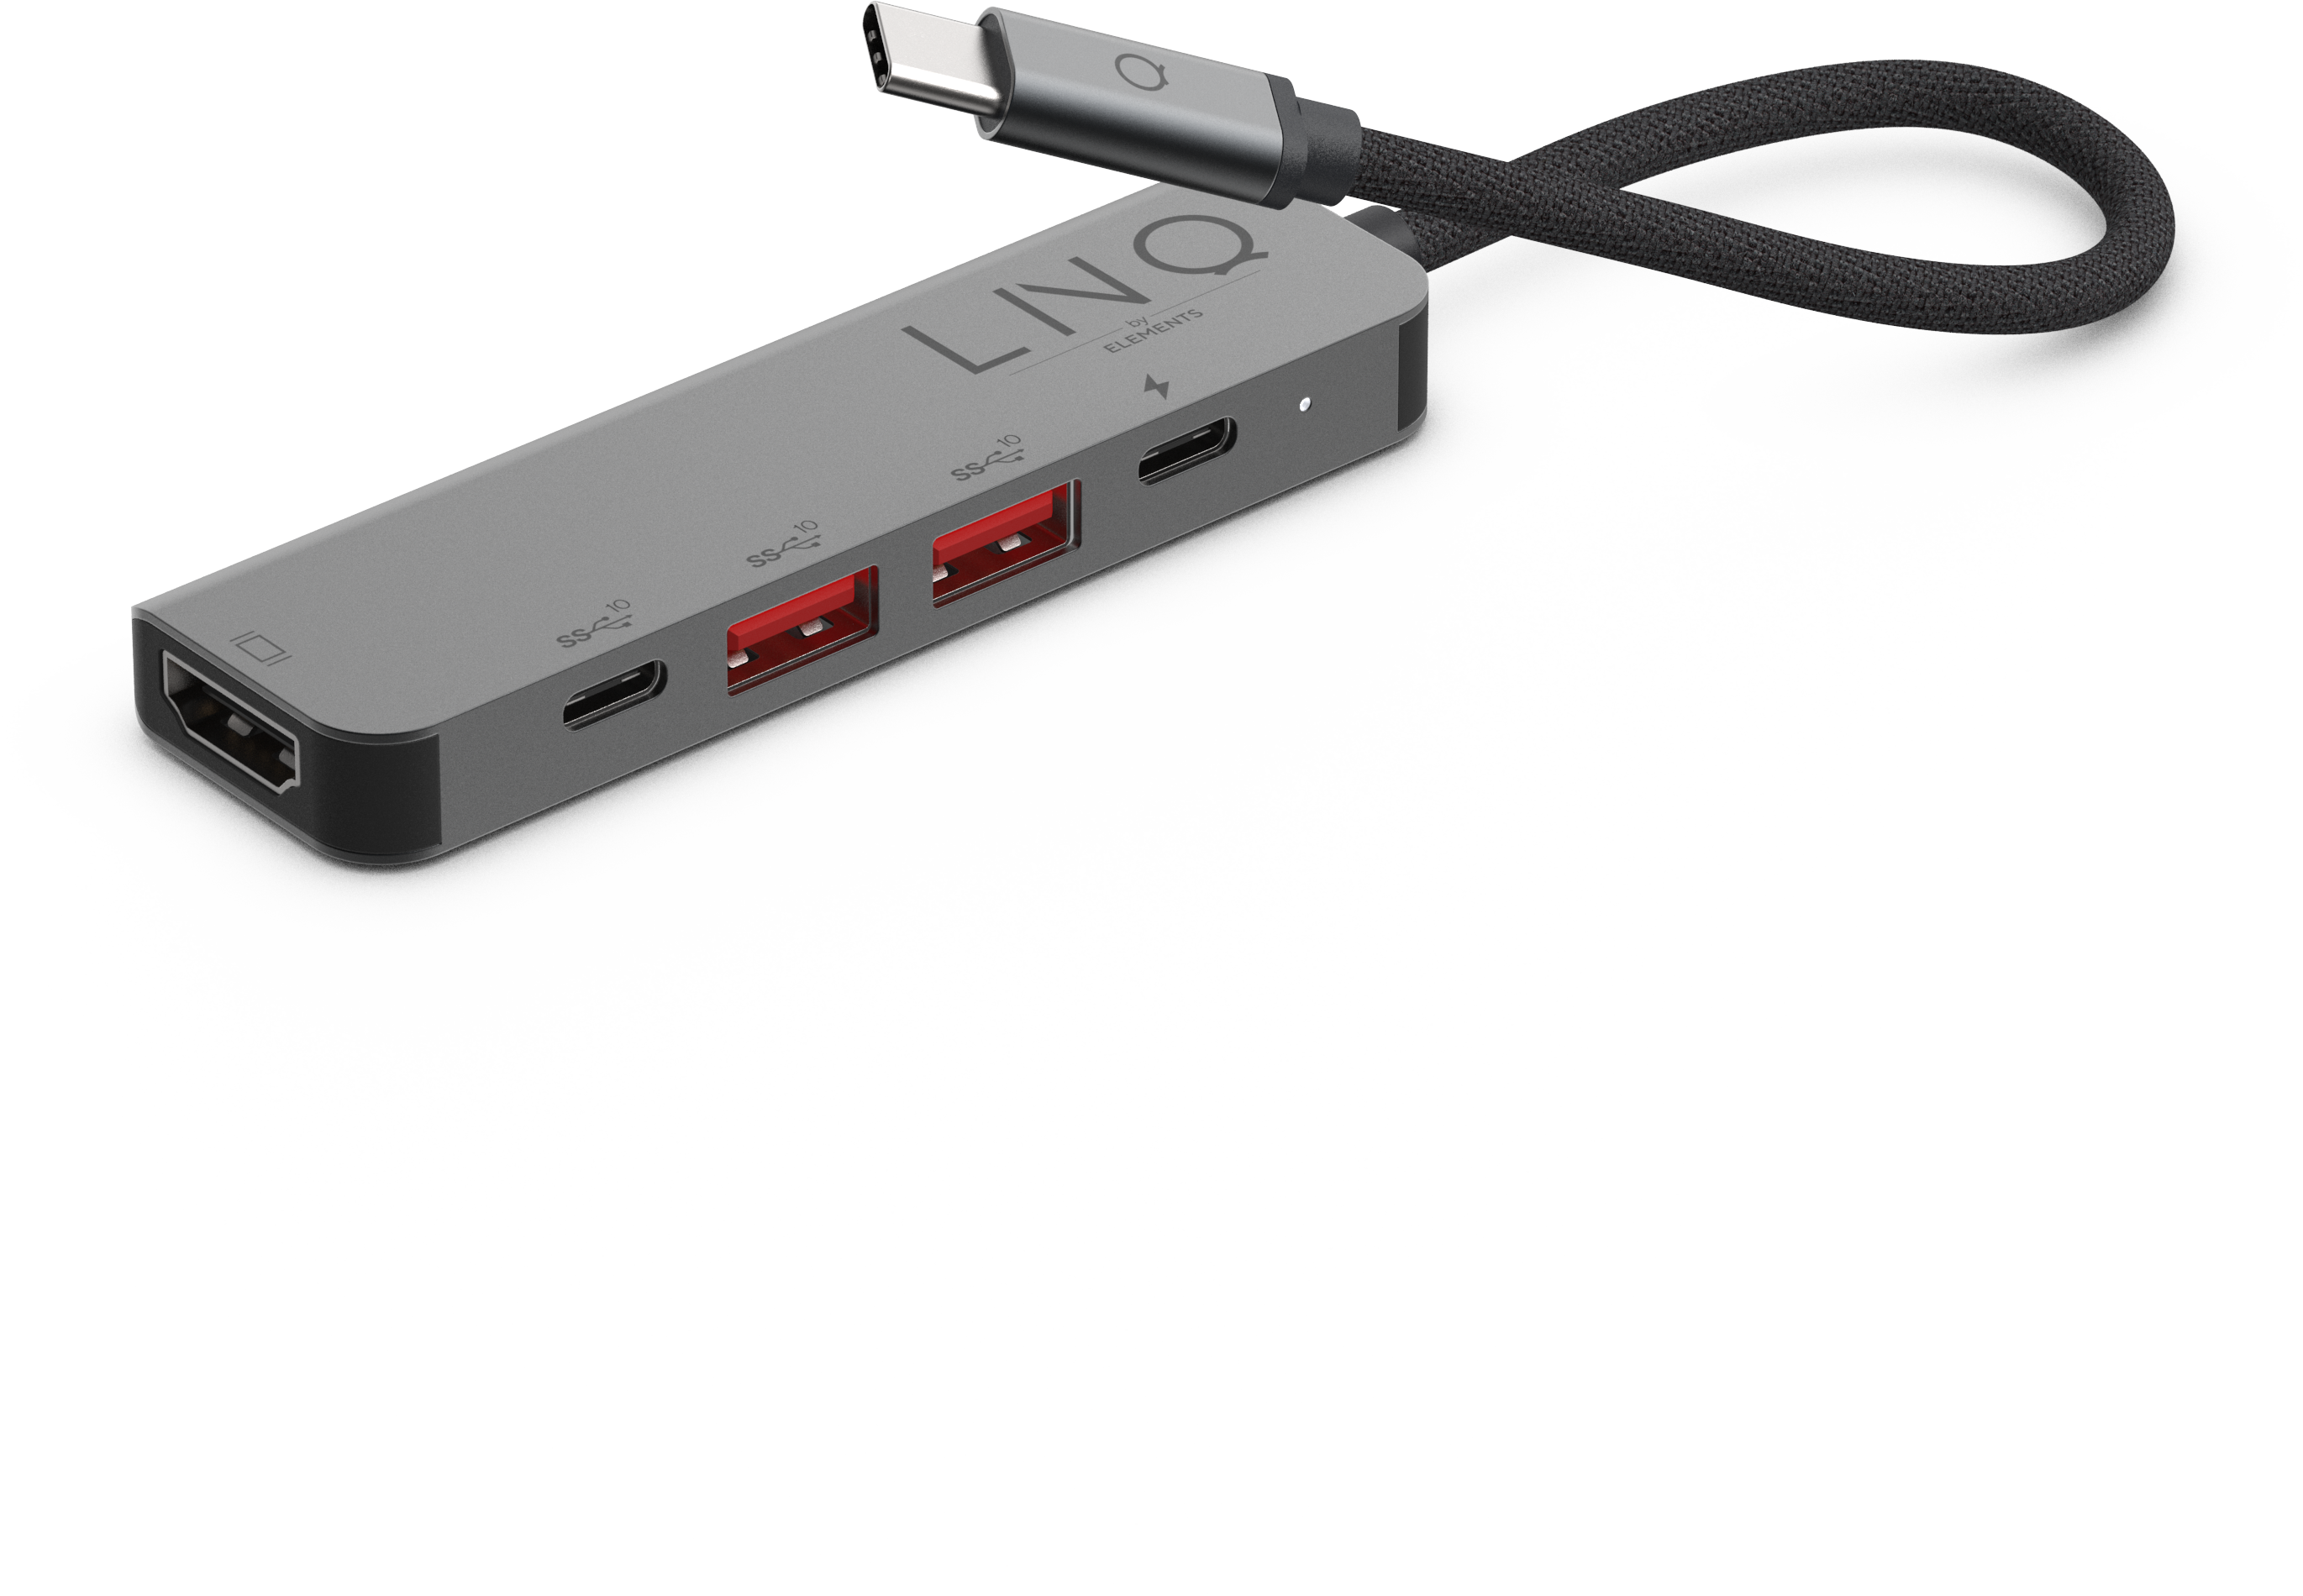 LINQ 5in1 Pro, USB-C Hub, Black, Grey